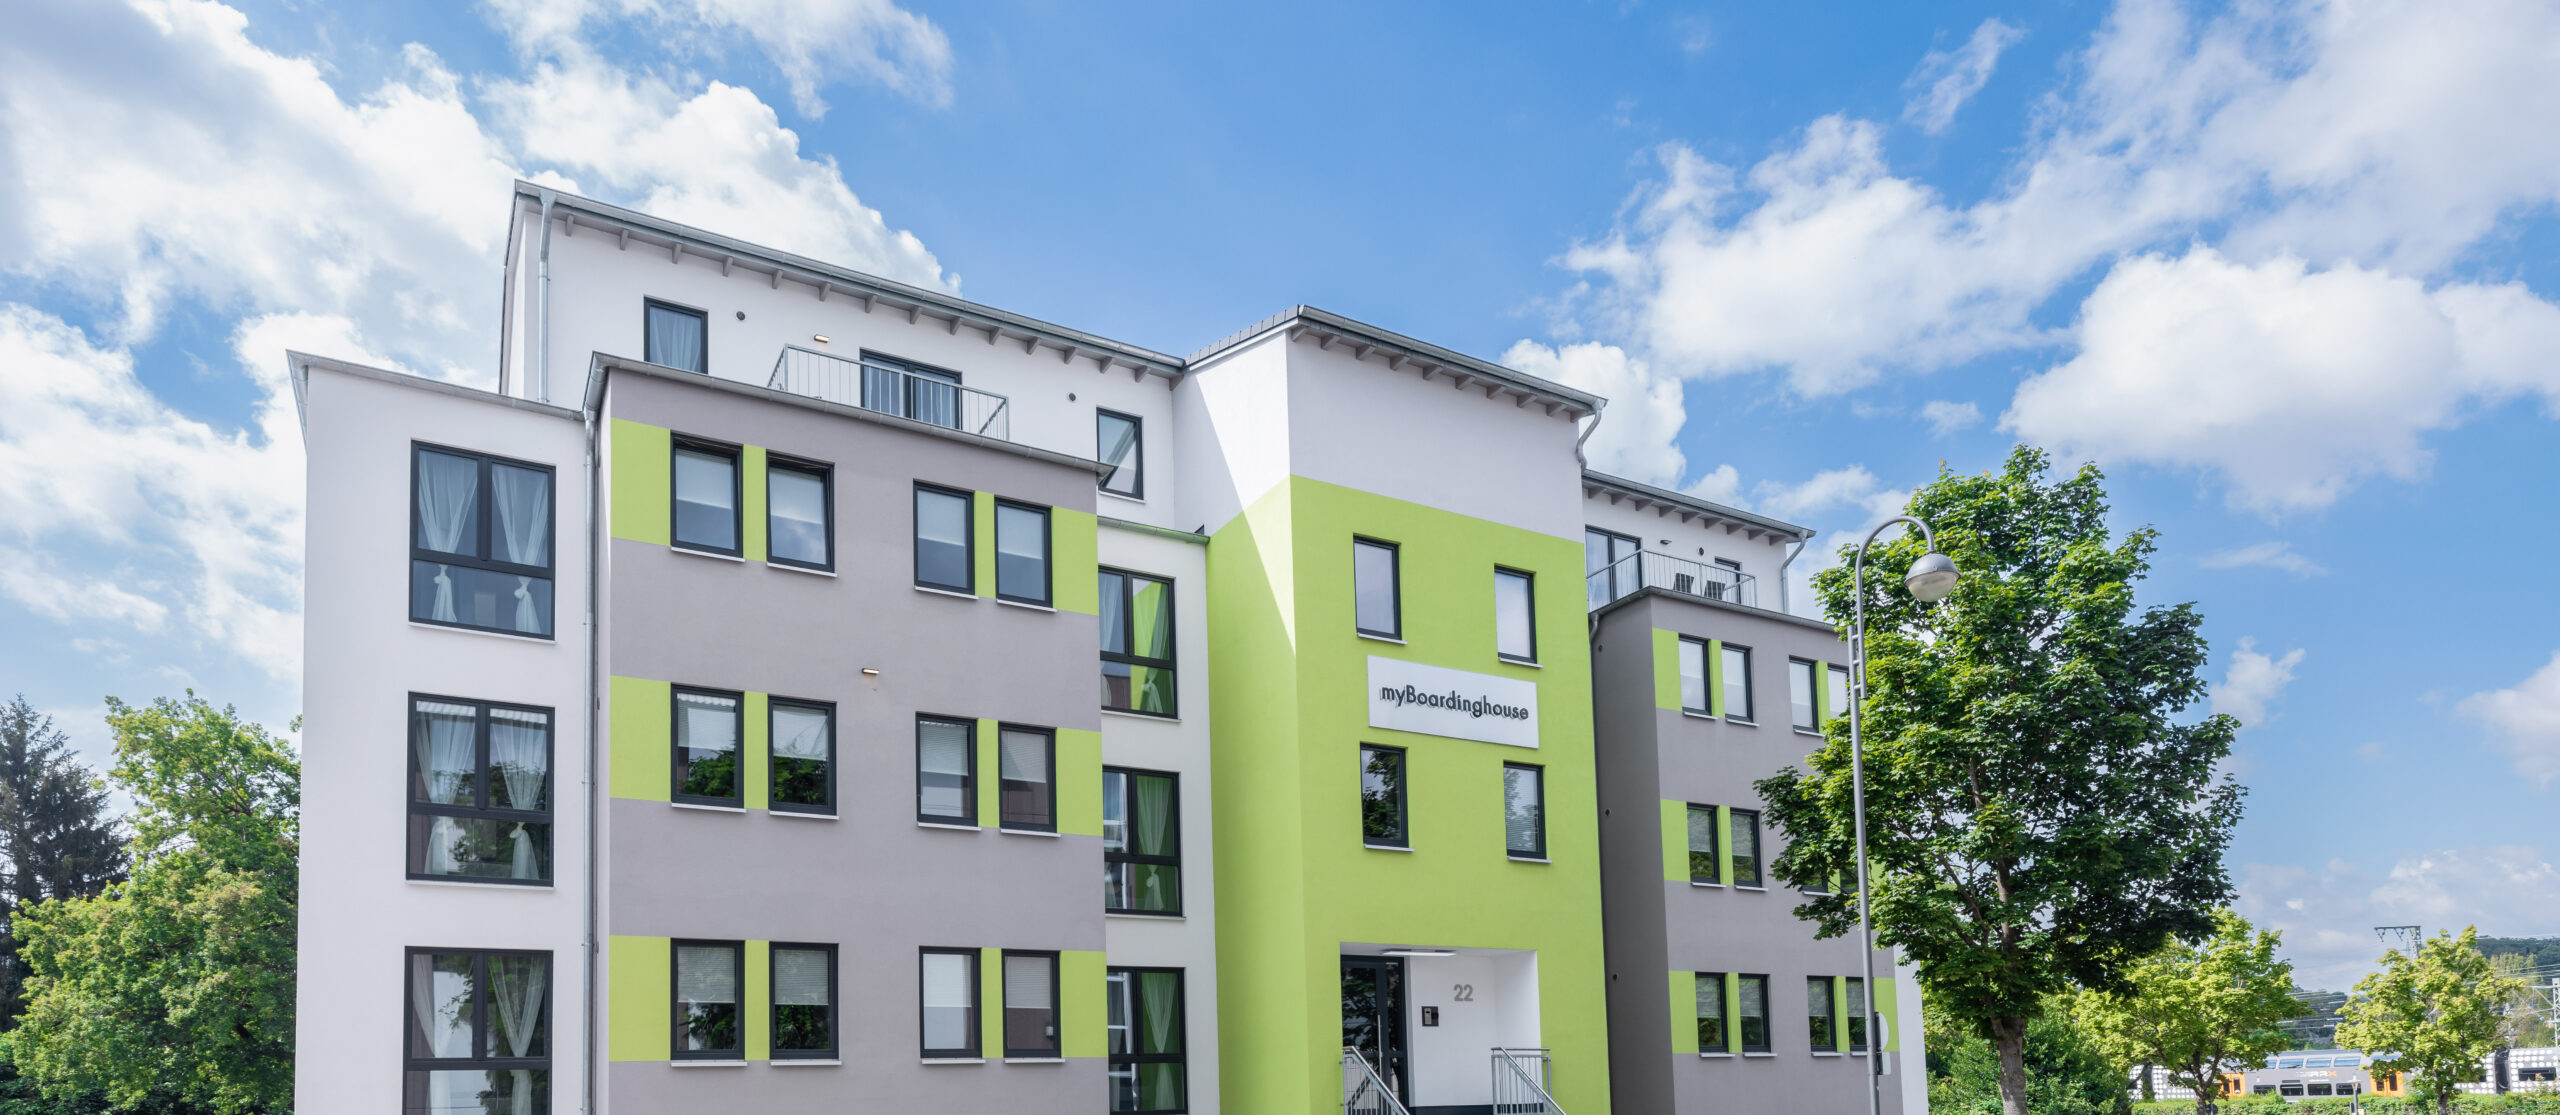 Dekoration im großzügigen Wohnbereich | Superior Boarding Apartment myBoardinghouse Halle Saale Peißen